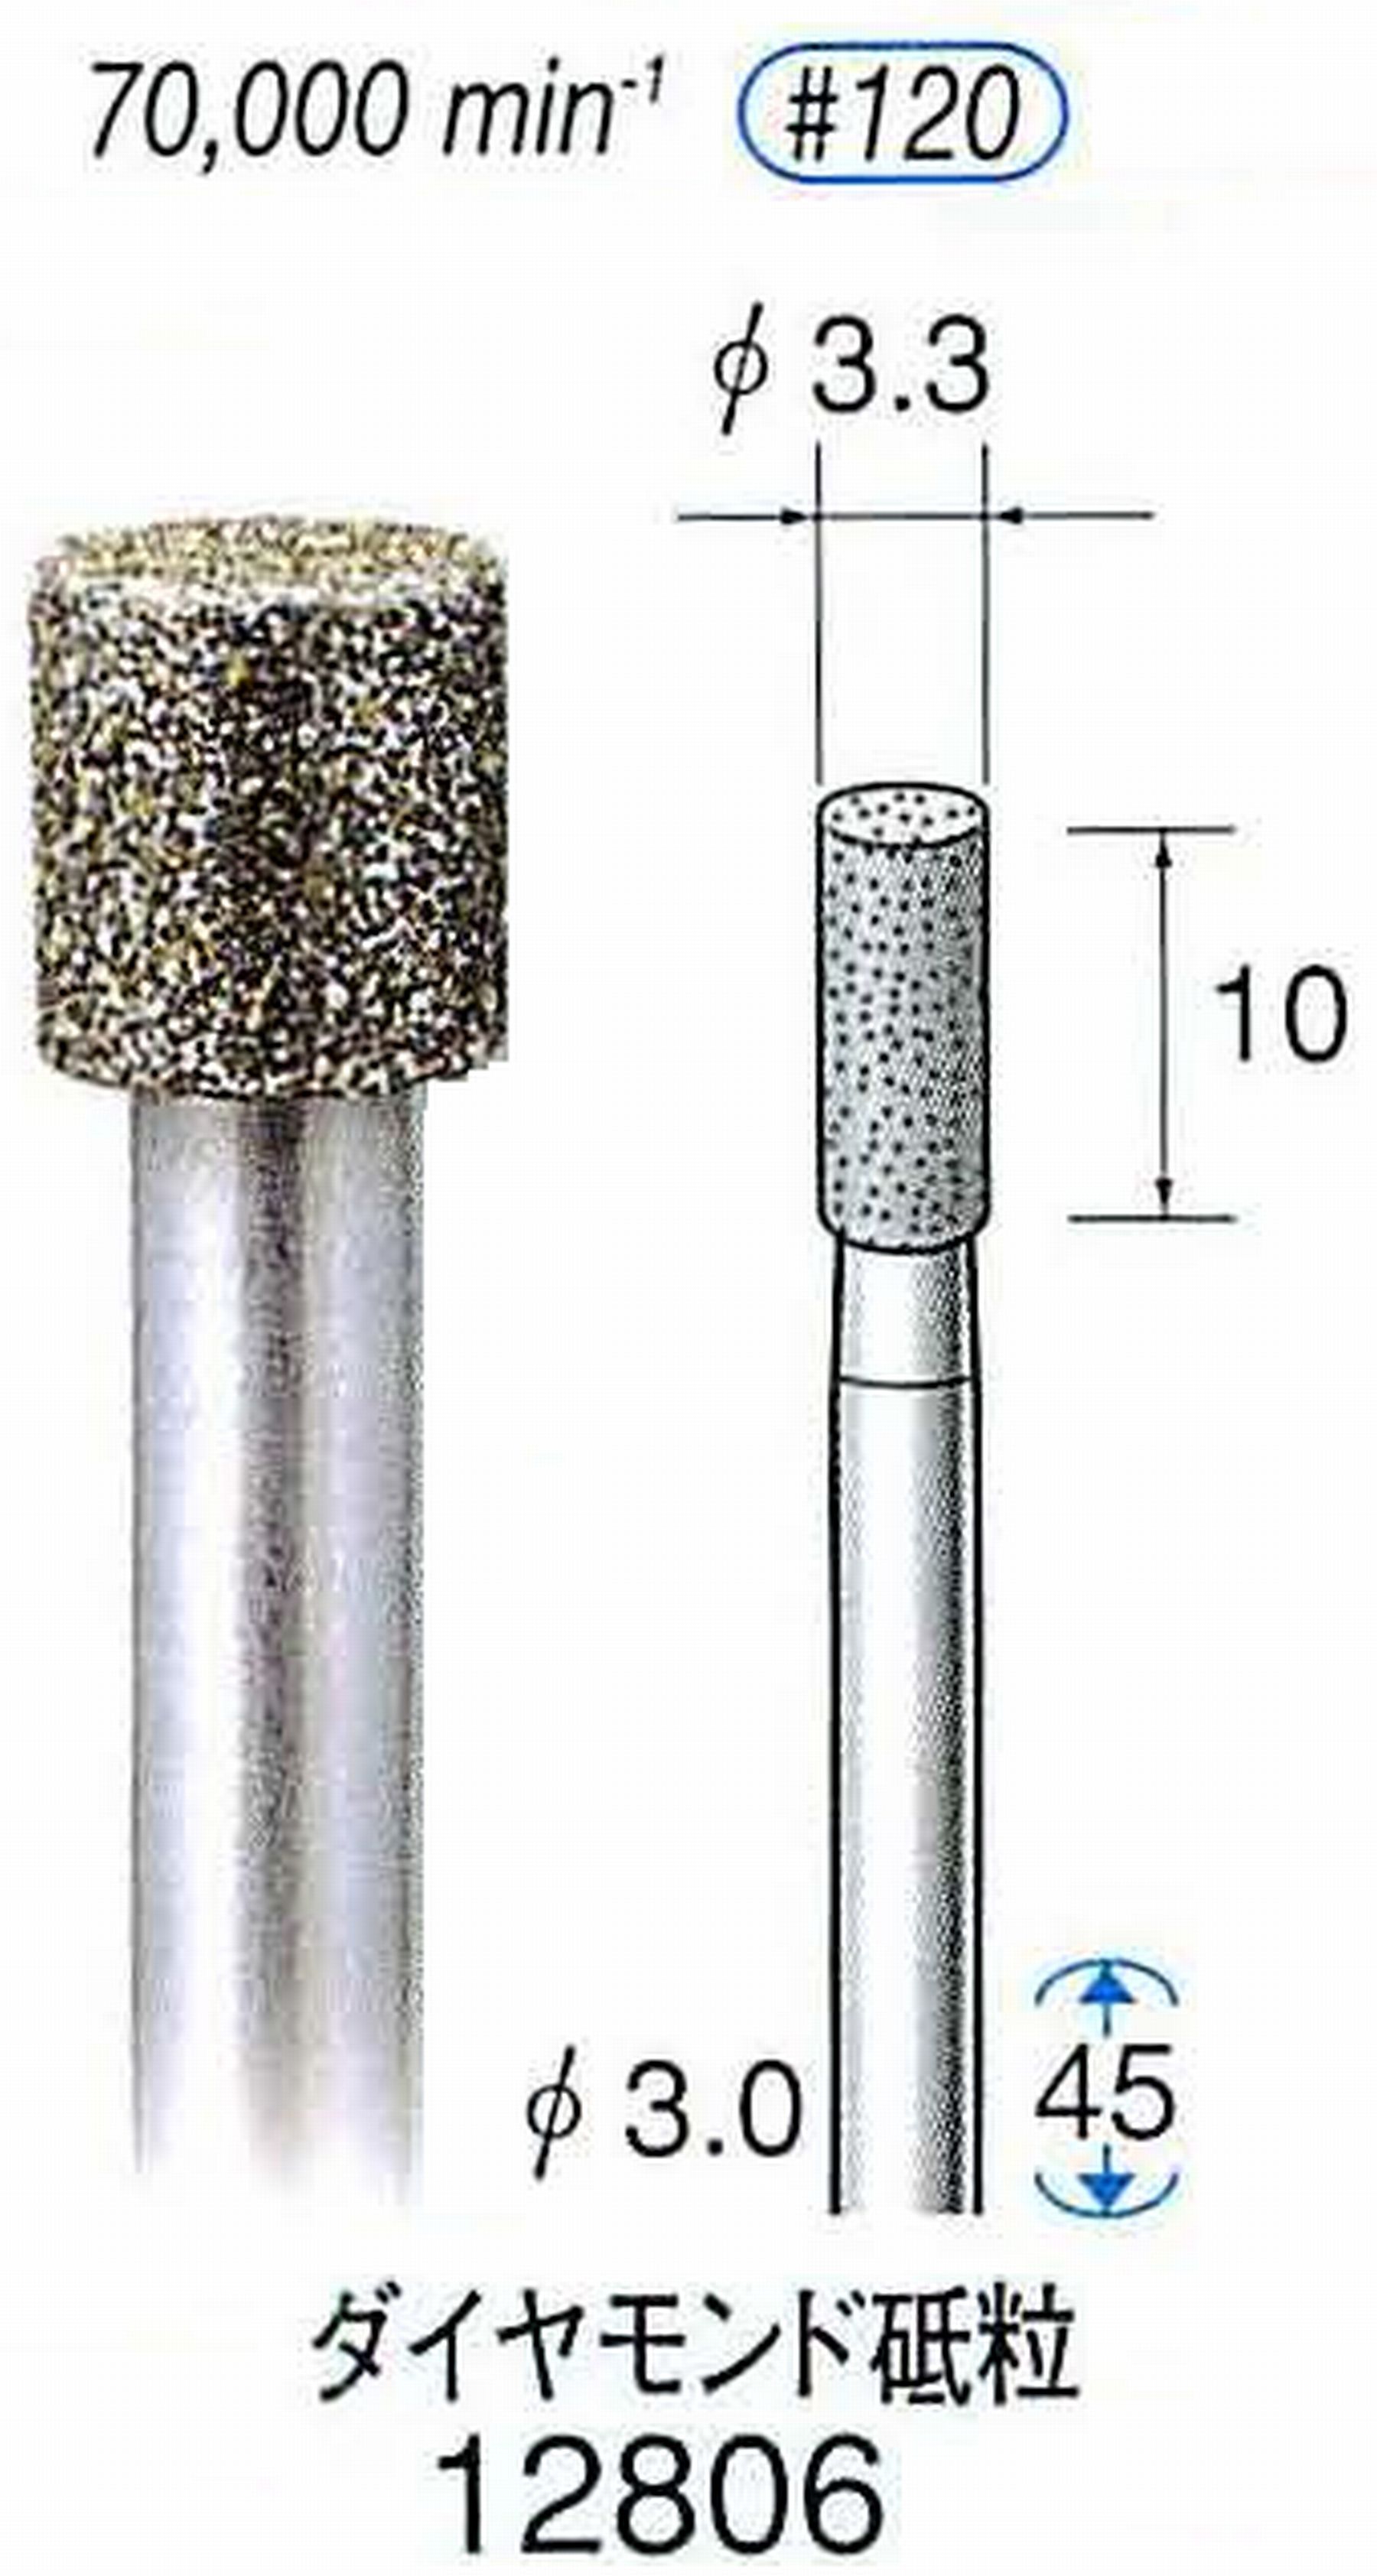 ナカニシ/NAKANISHI クラフト・ホビー用ダイヤモンドバー ダイヤモンド砥粒 軸径(シャンク)φ3.0mm 12806